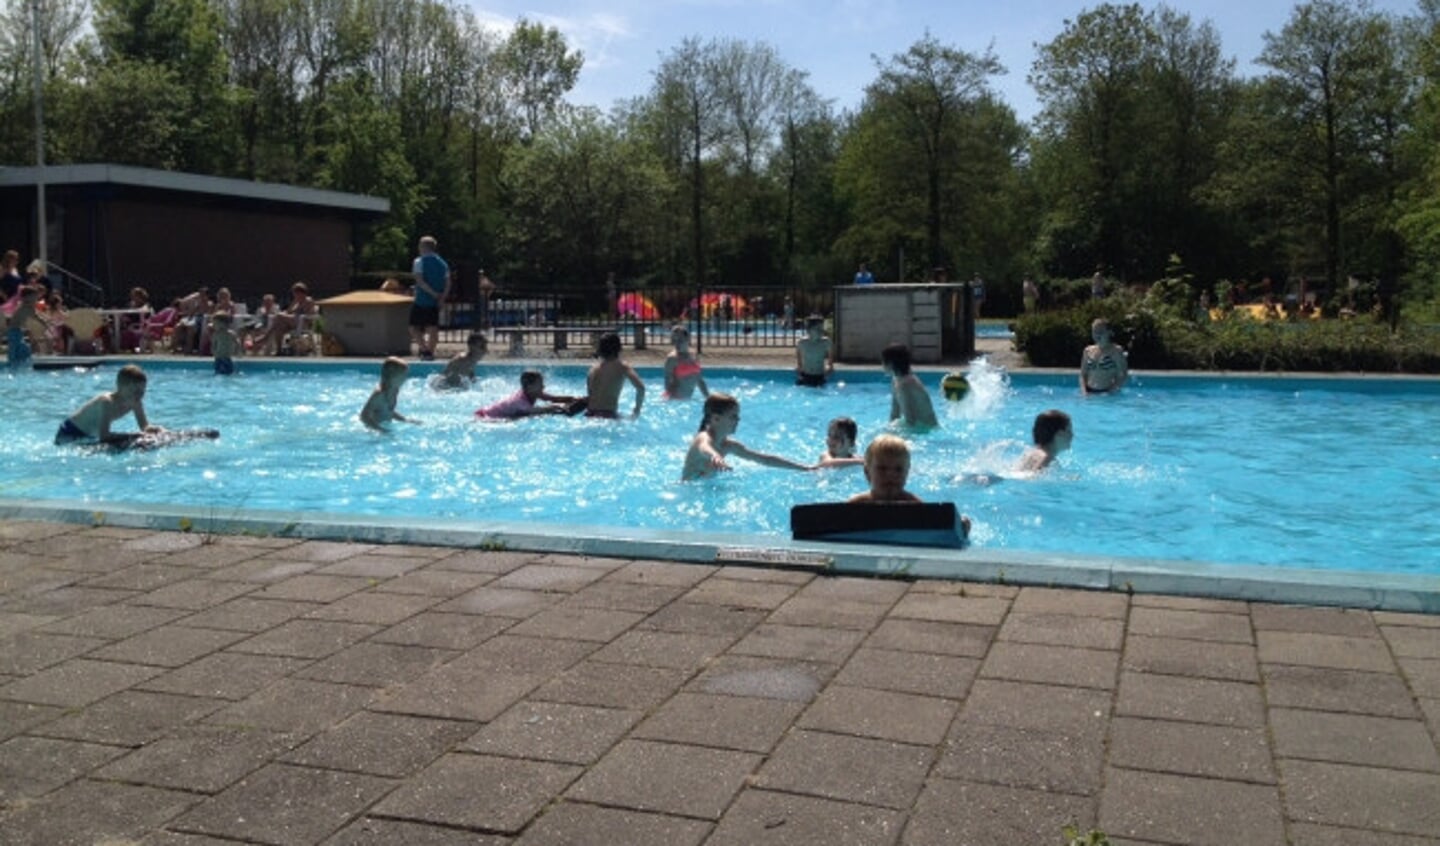 Zwembad De Abelen in Swifterbant.